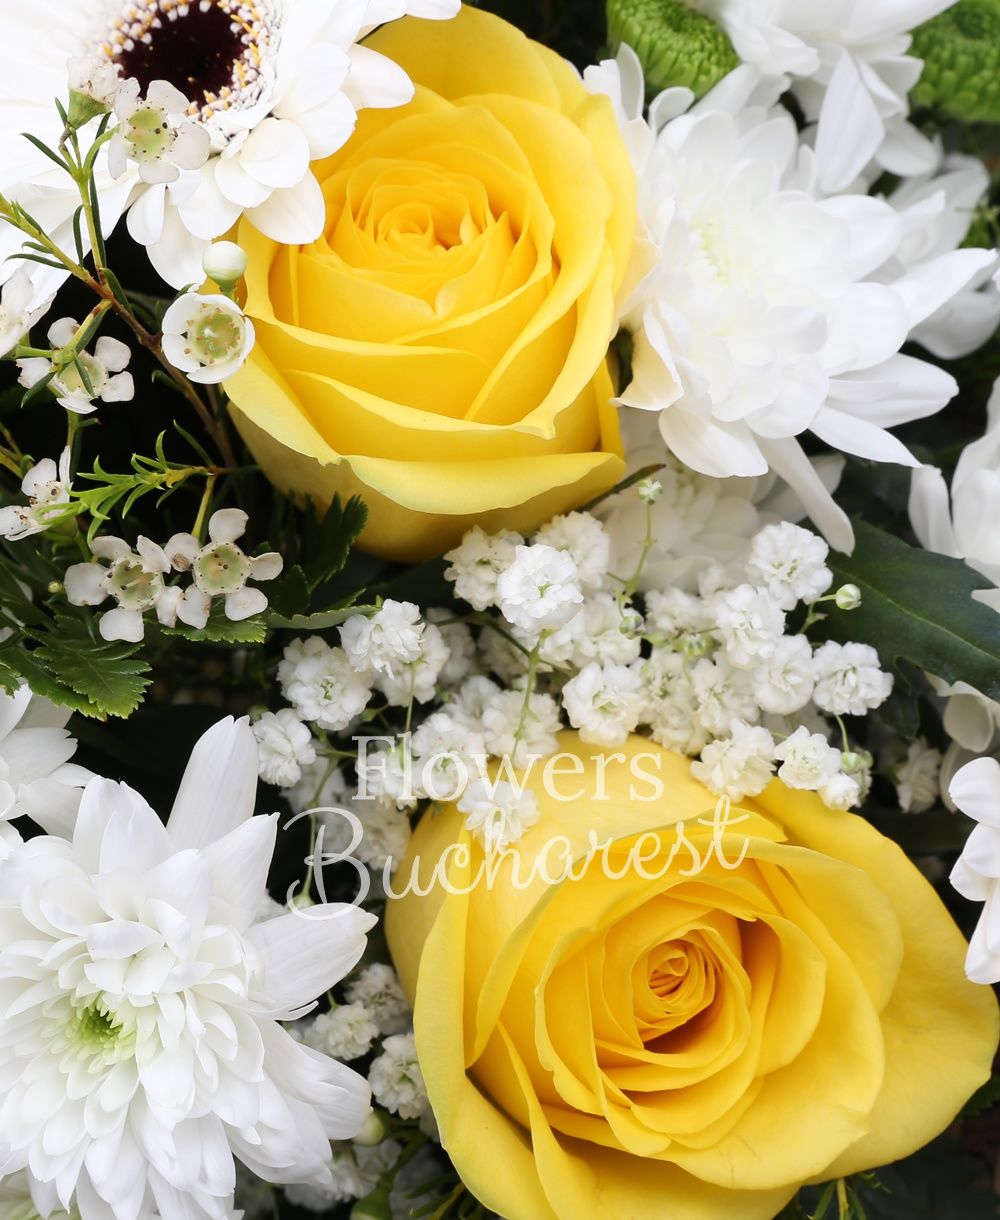 7 yellow roses, 4 white chrysanthemums, 7 white gerberas, 5 green santini, greenery